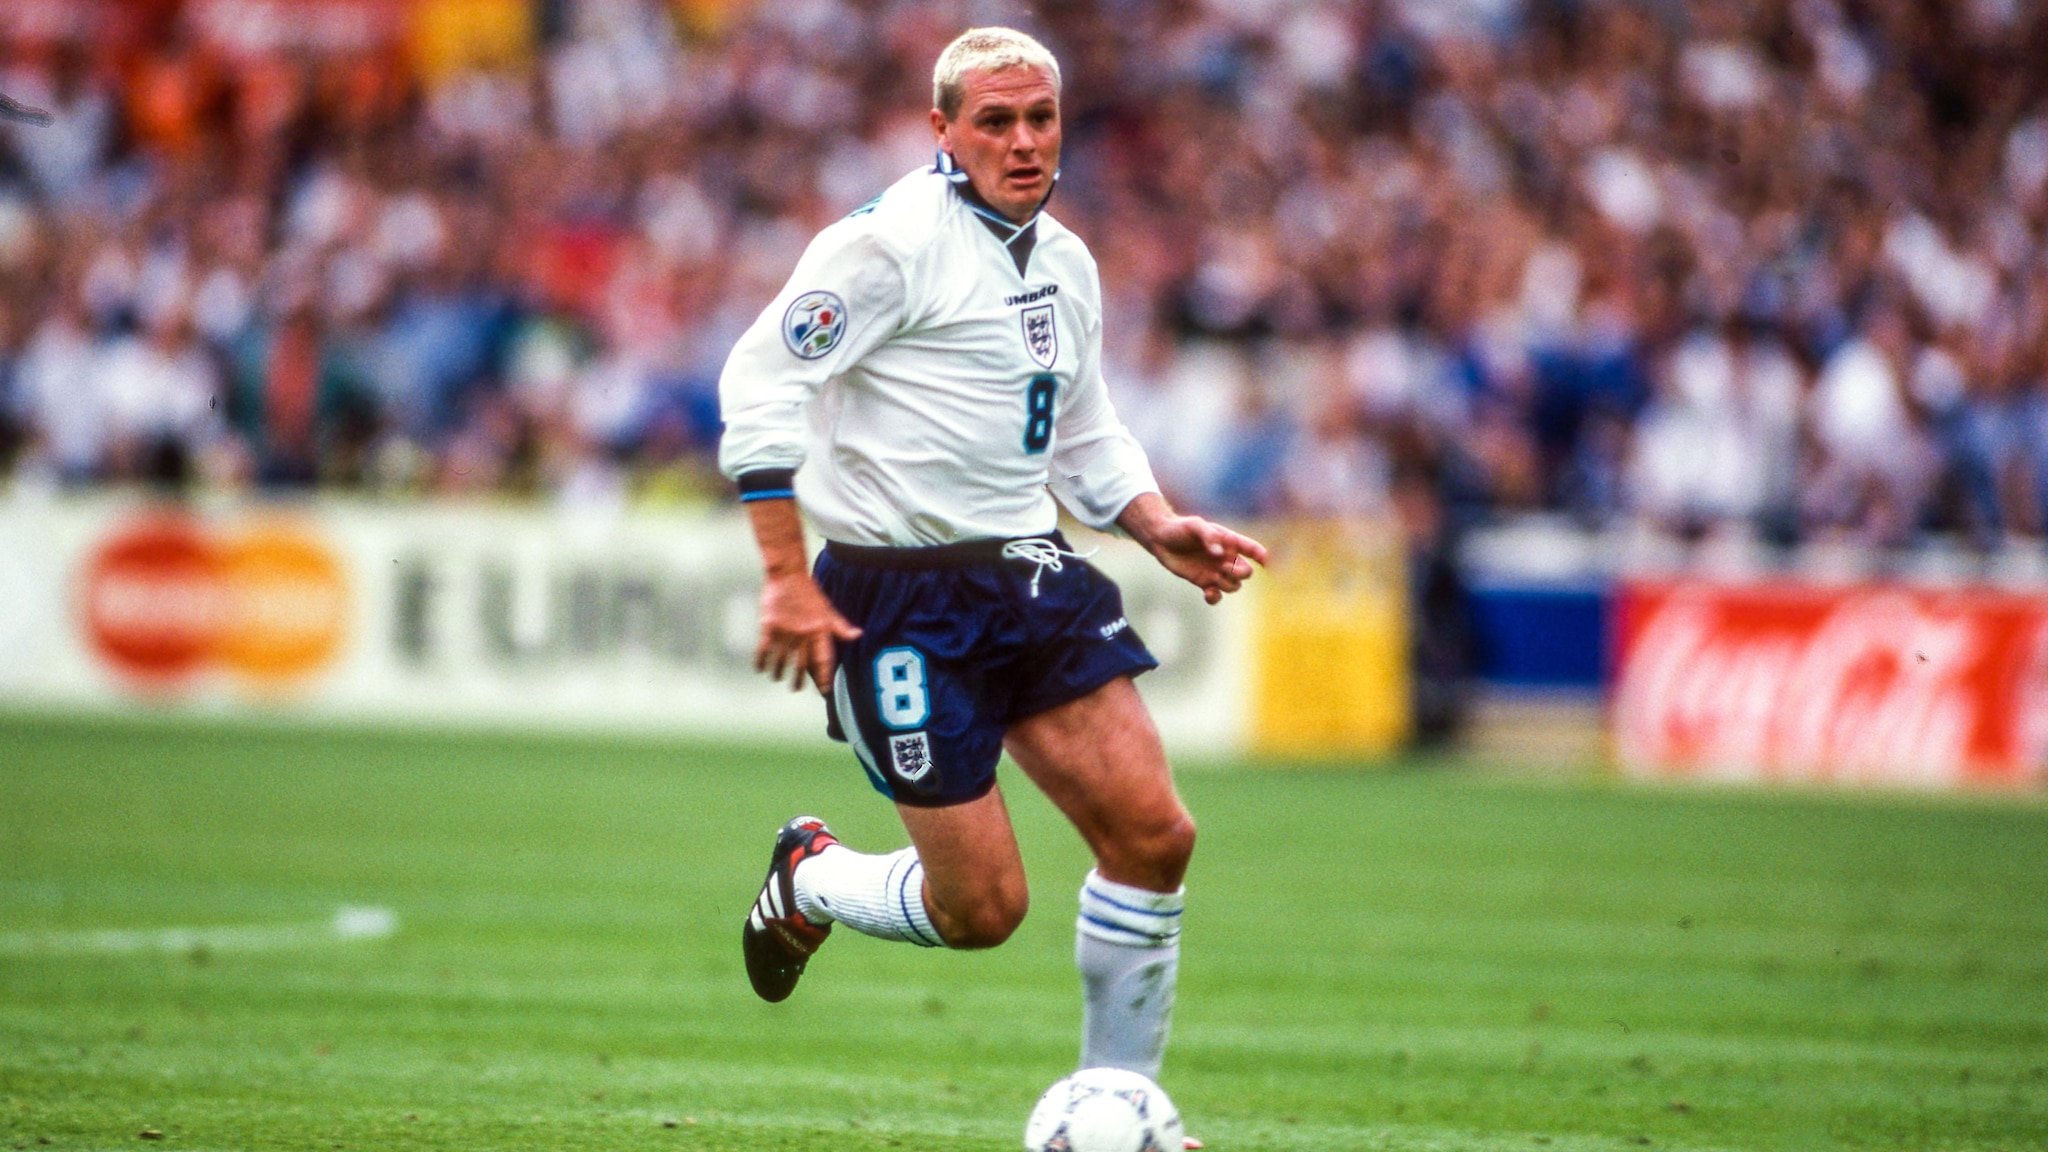 EURO '96 spotlight: How brilliant was England's Paul Gascoigne? | UEFA EURO | UEFA.com